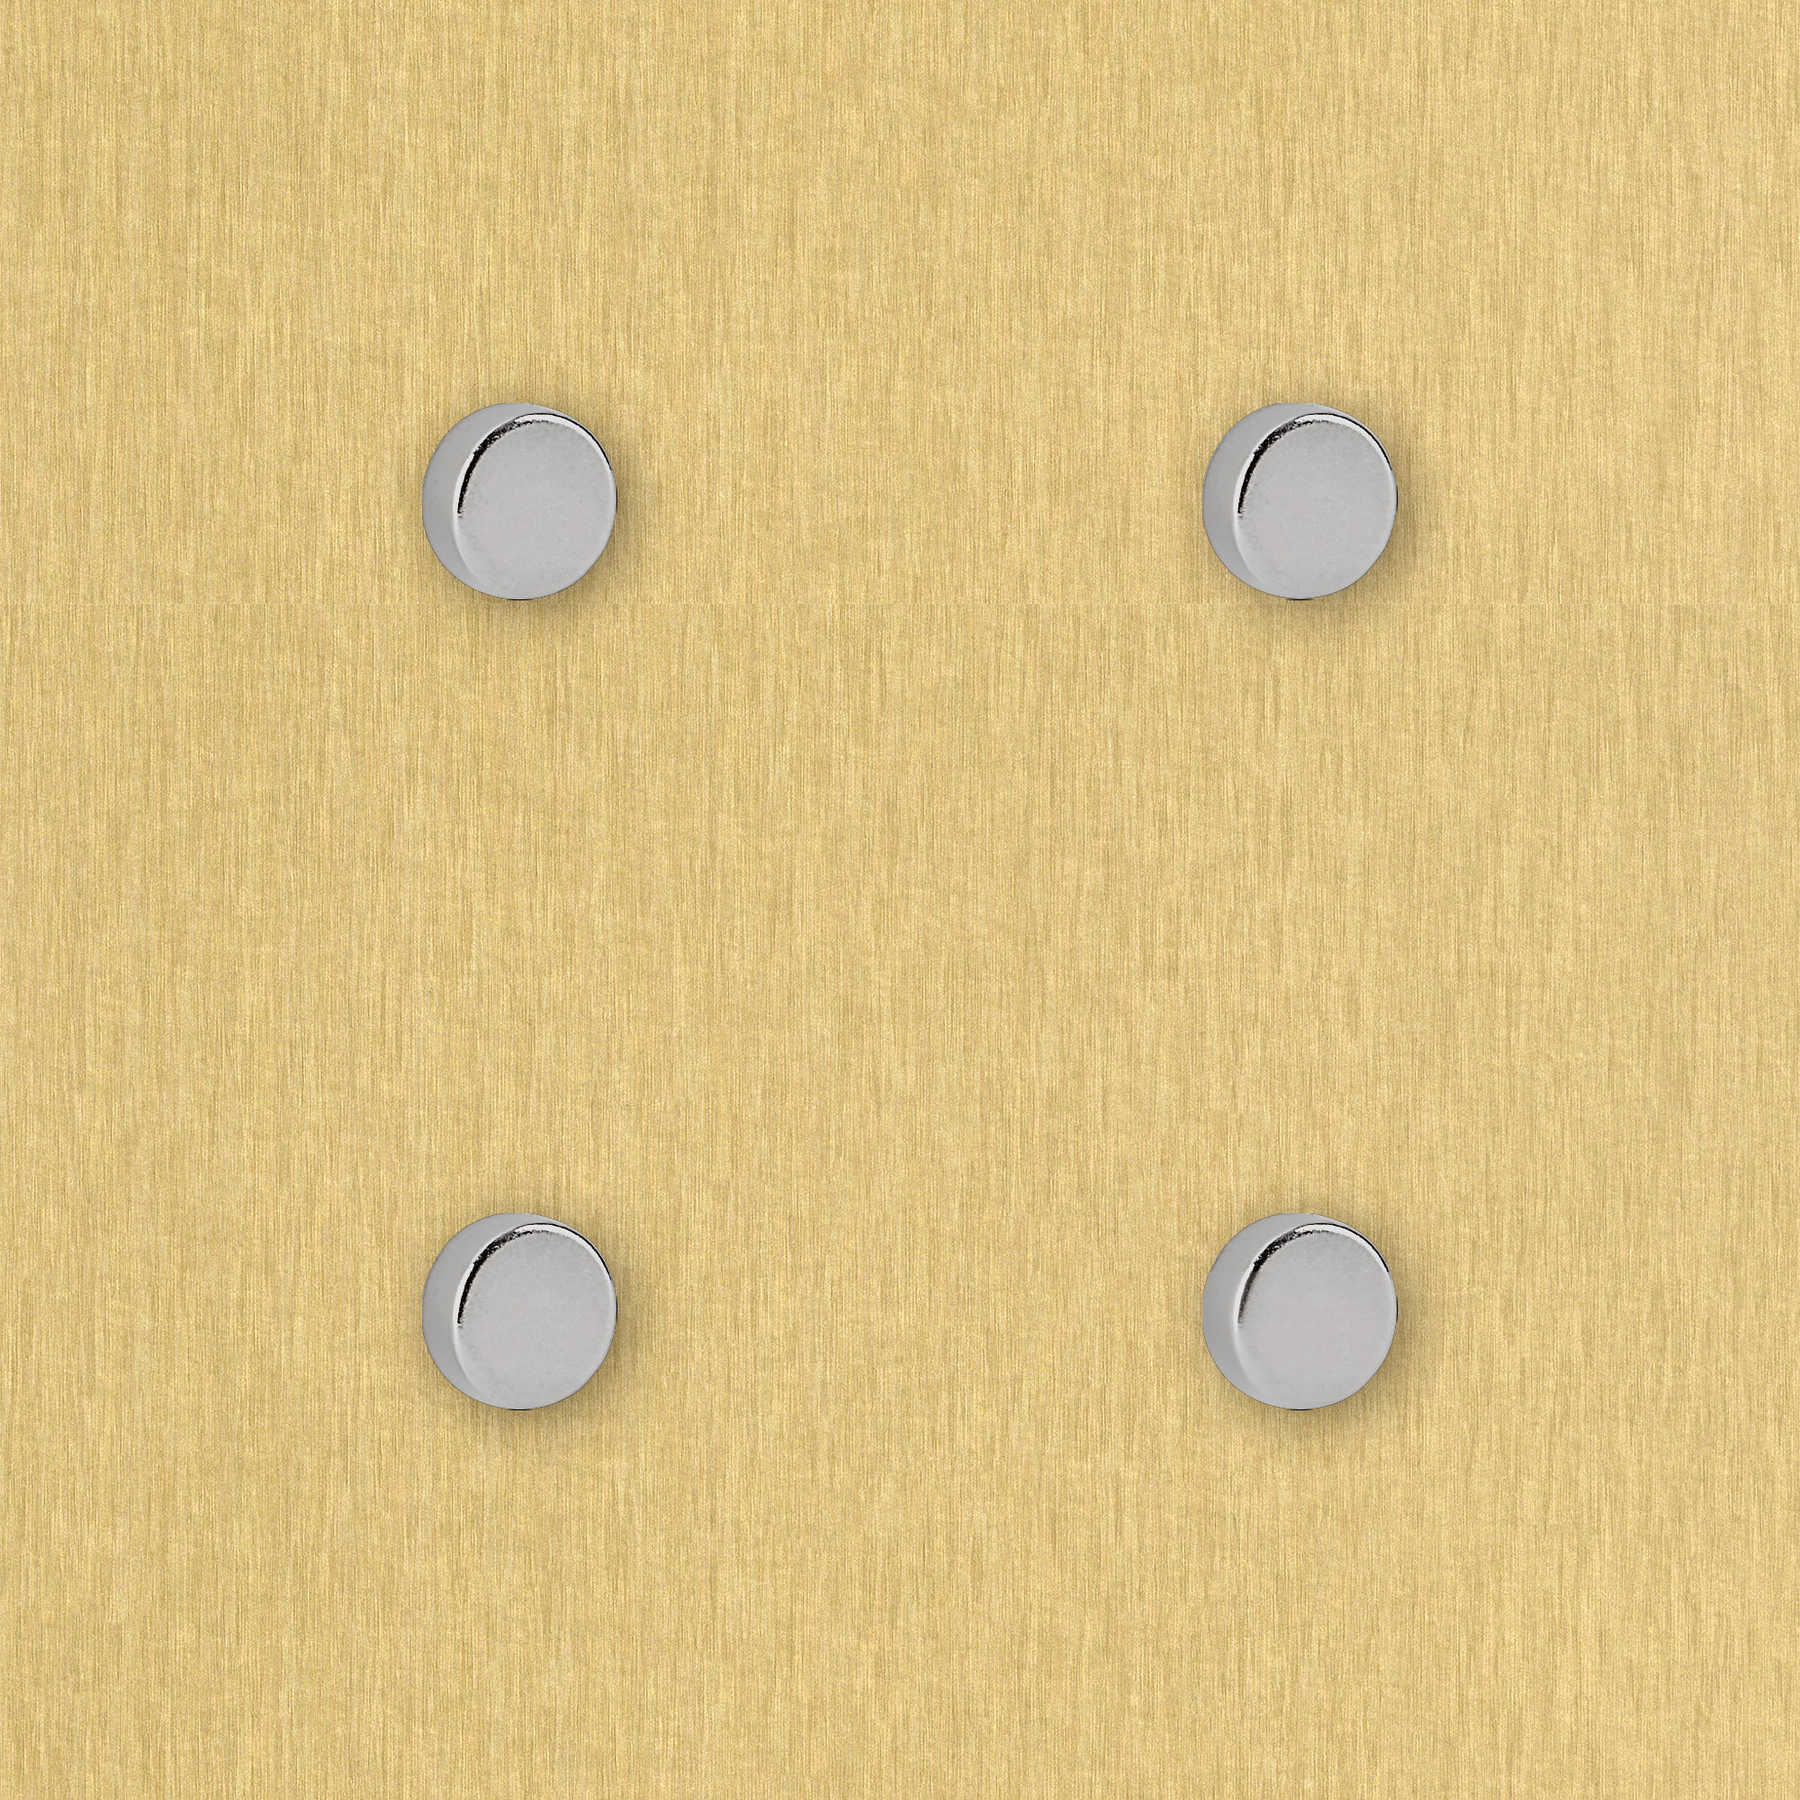             Set van 4 ronde sterke magneten in 10 x 4 mm
        